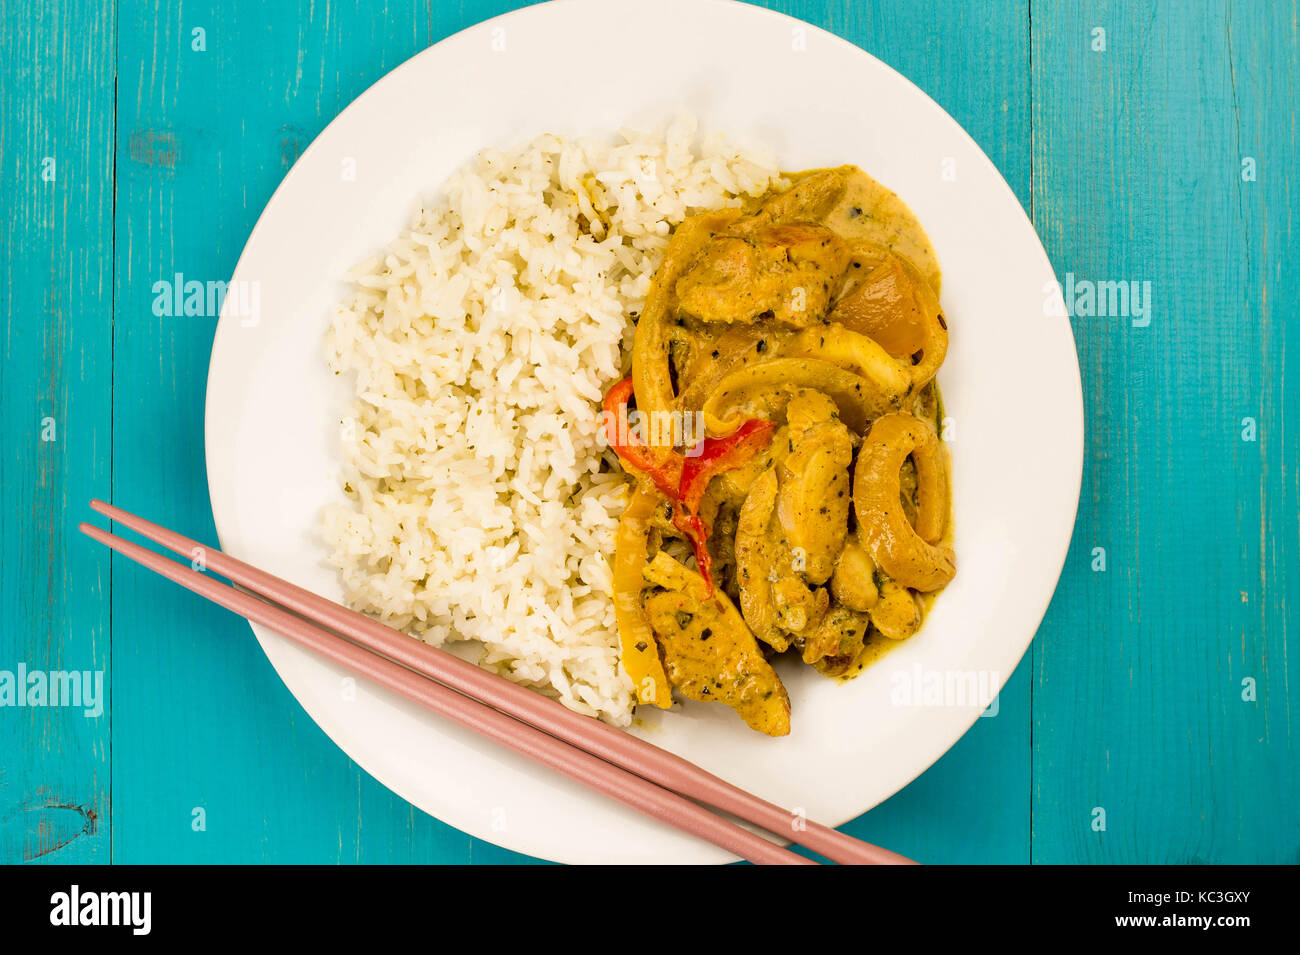 Estilo tailandés curry panang de pollo con arroz jazmín azul contra un fondo de madera Foto de stock